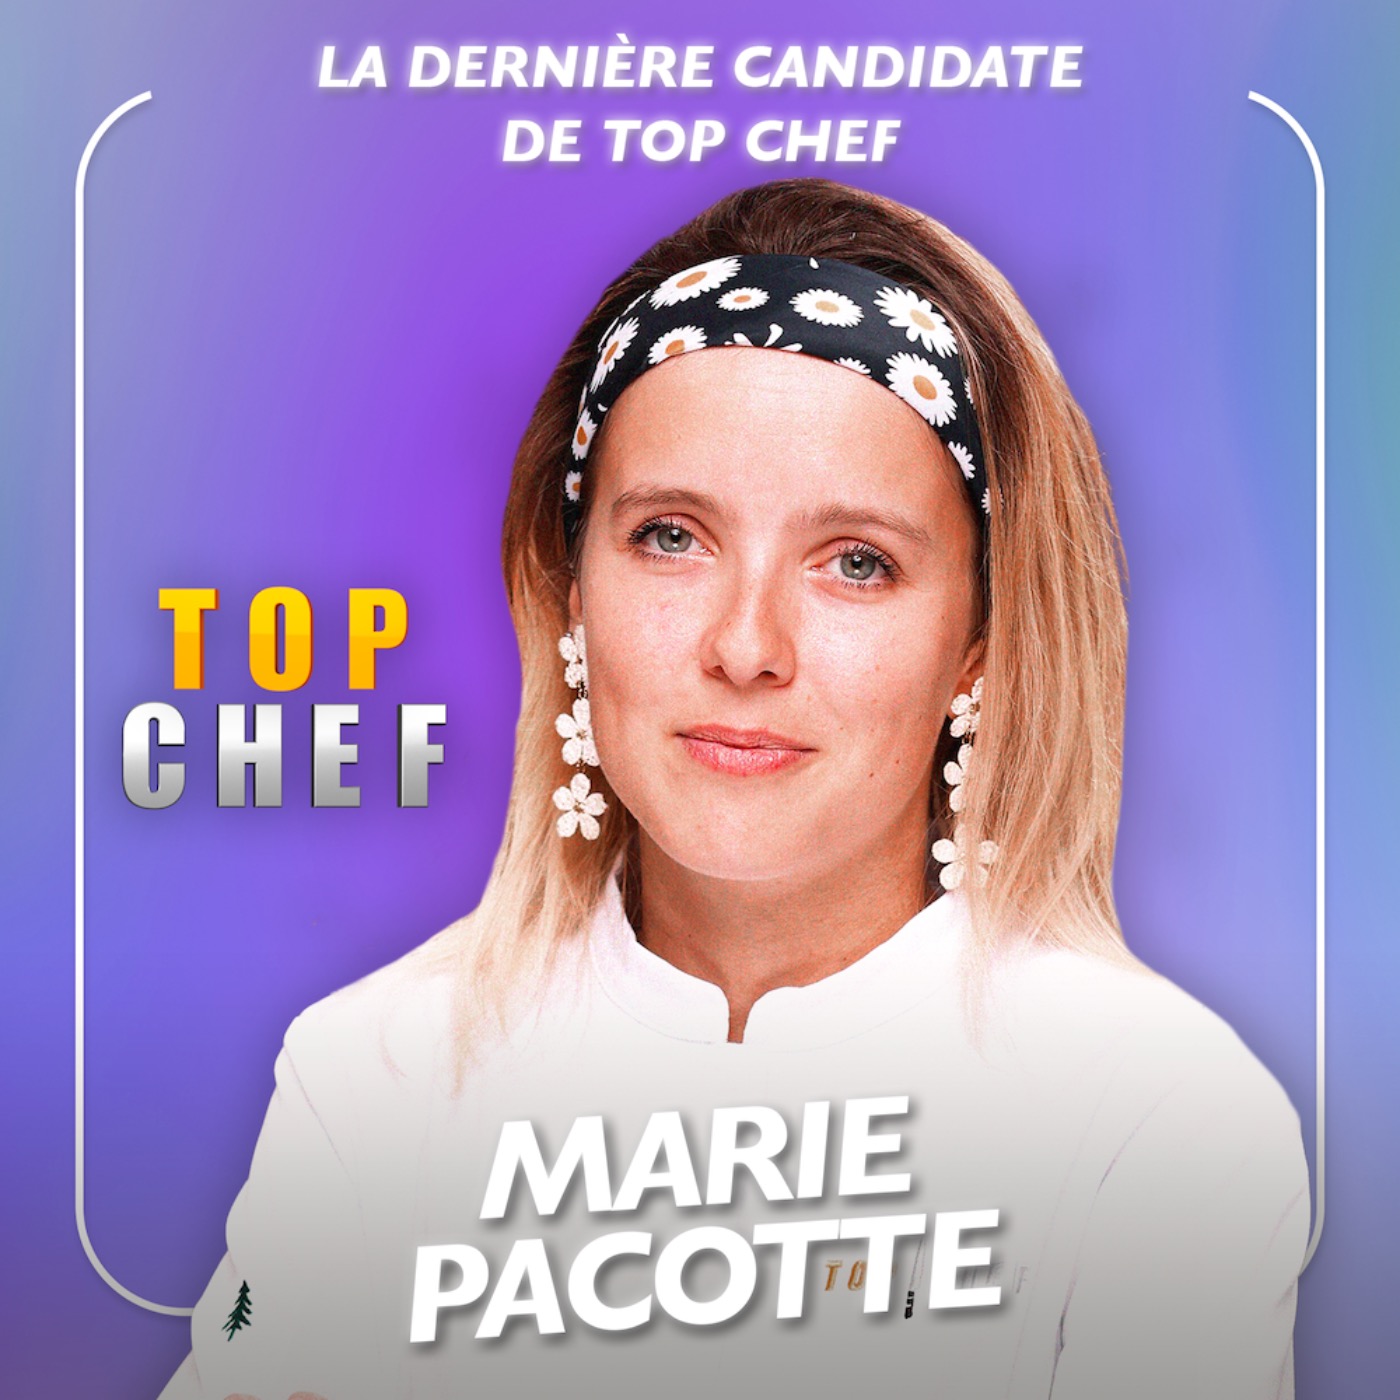 [SPÉCIALE TOP CHEF] La dernière candidate de Top Chef - Marie Pacotte se livre